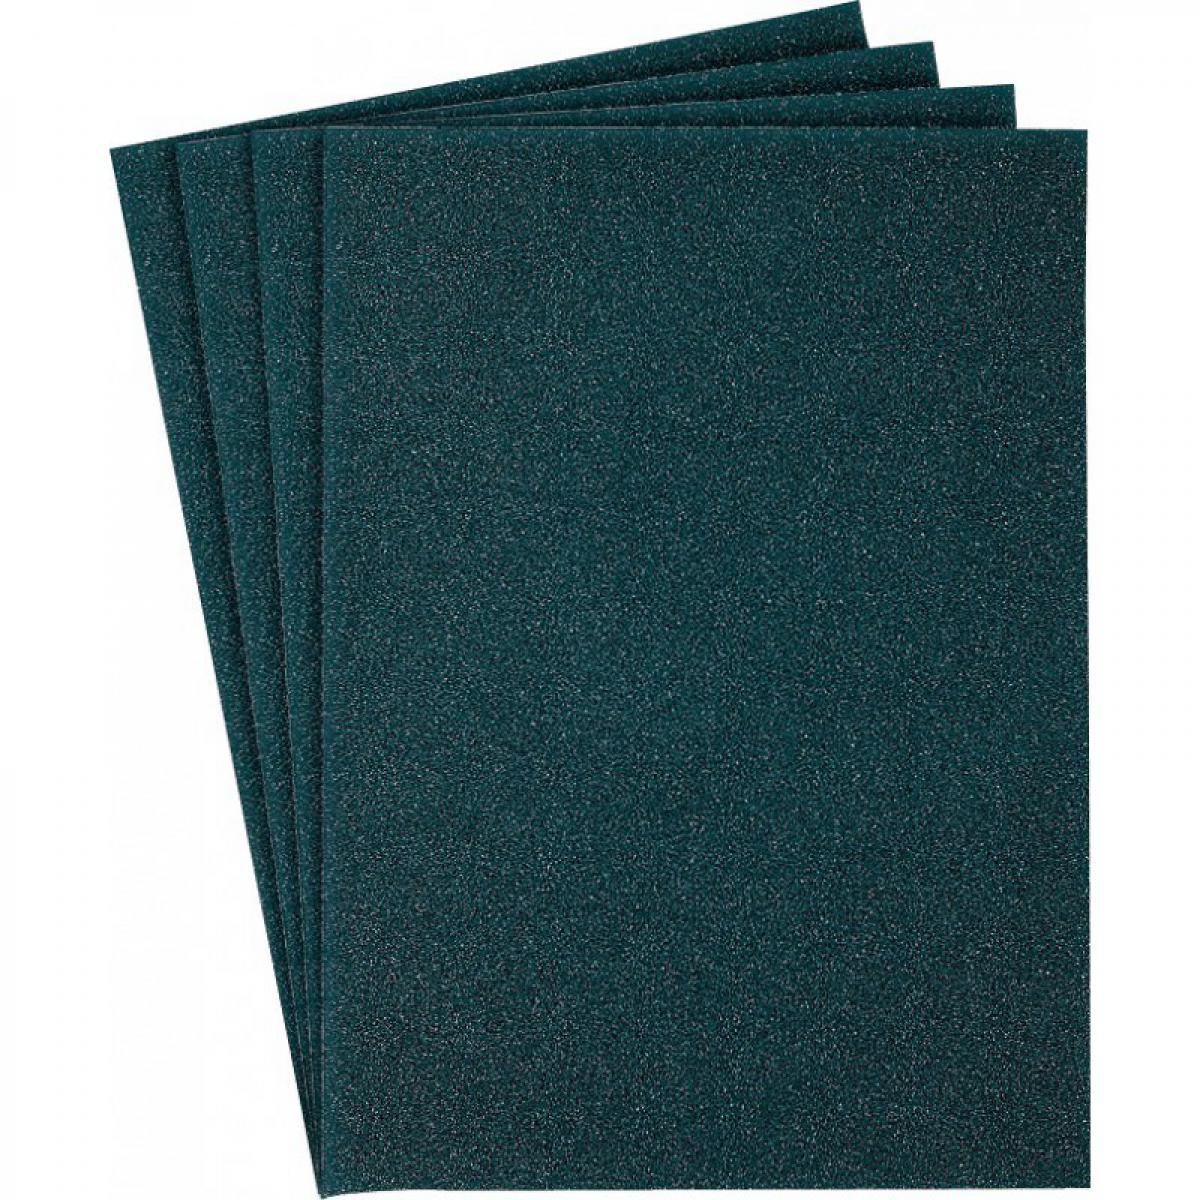 Klingspor - Papier abrasif bleu KL371x230x280mm Grain 180 Klingspor - Abrasifs et brosses